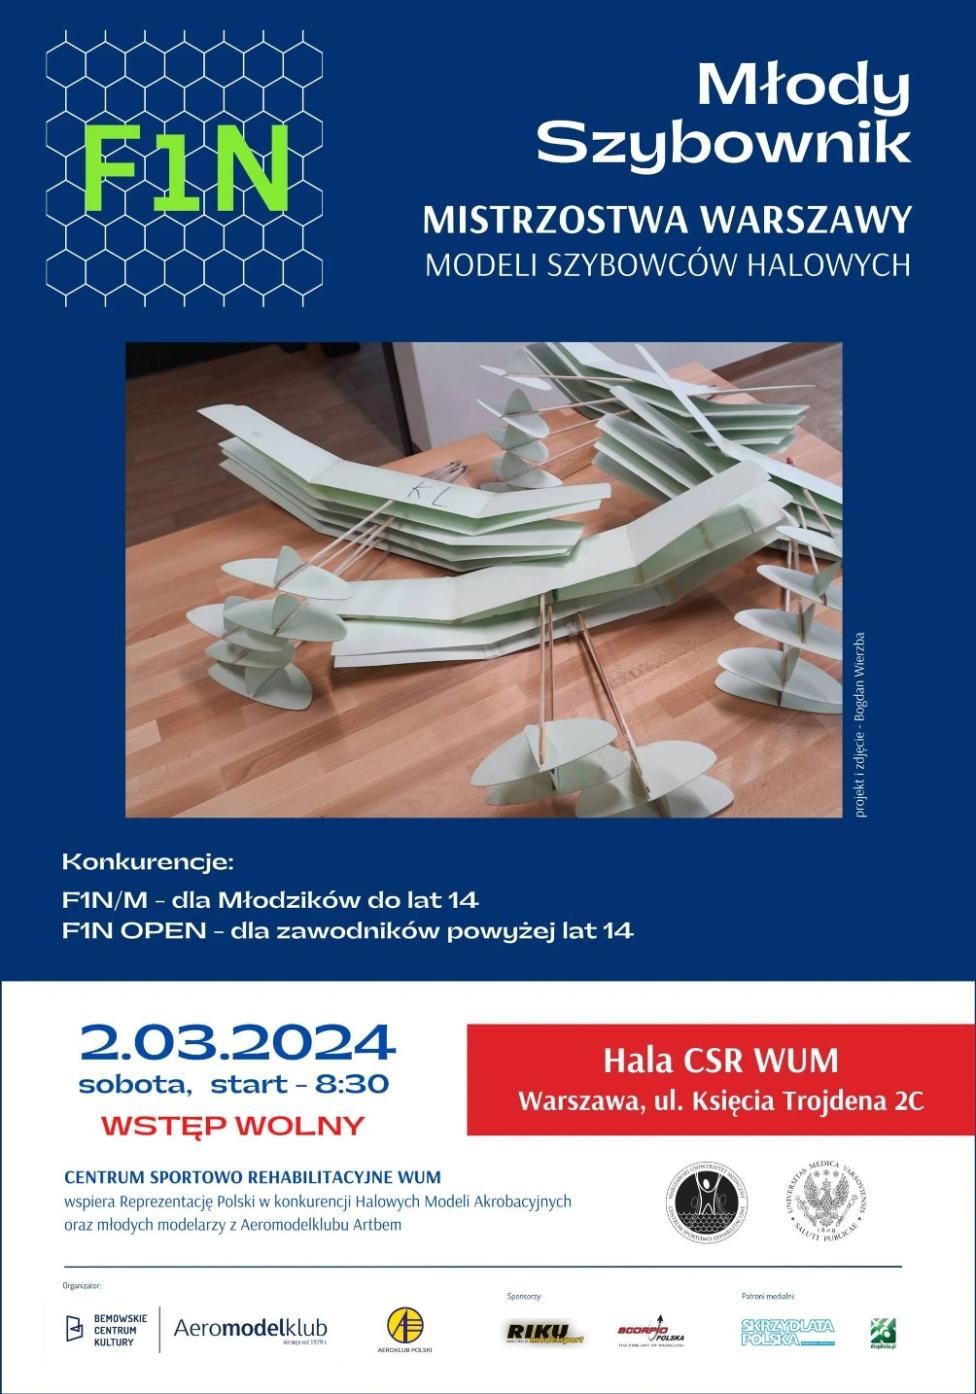 Młody Szybownik - Mistrzostwa Warszawy Modeli Szybowców Halowych dla Młodzików 2024 - plakat (fot. Bemowskie Centrum kultury)